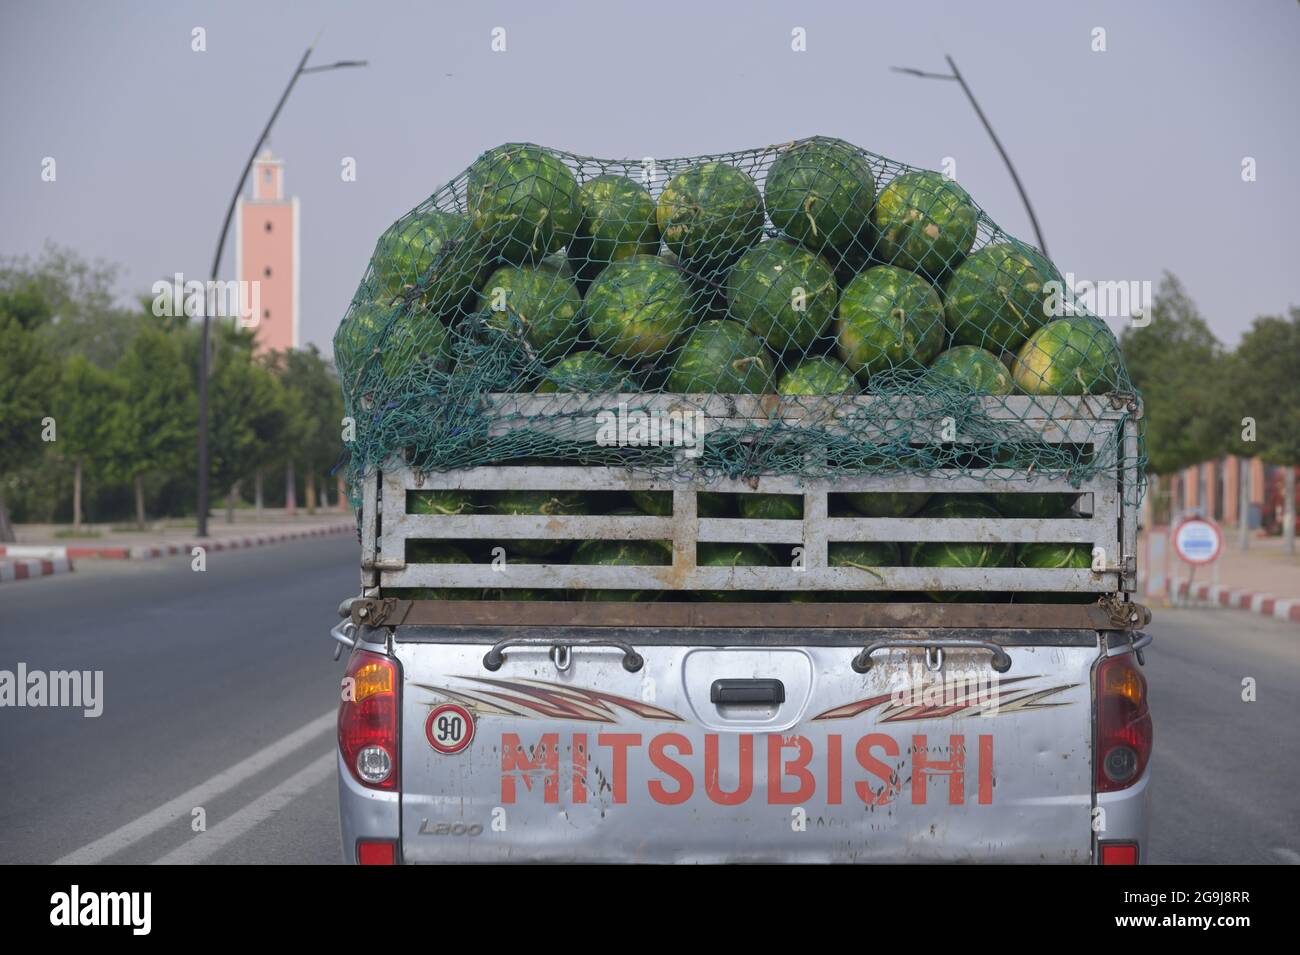 Ein Van, der riesige Wassermelonen zum Markt transportiert, Chichaoua MA  Stockfotografie - Alamy